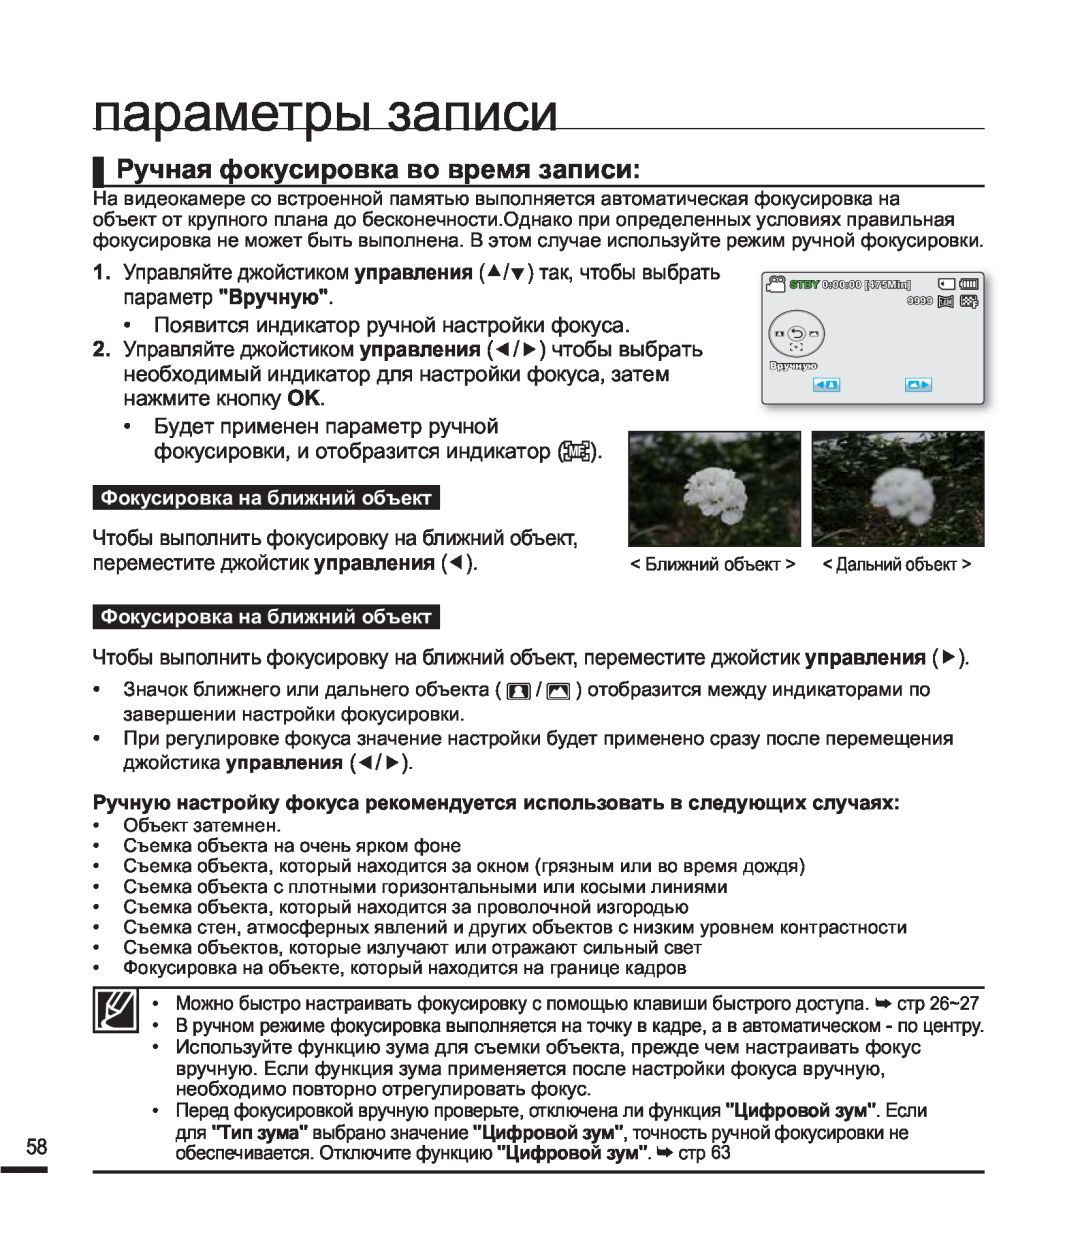 Samsung SMX-F40BP/XER manual Ɋɭɱɧɚɹɮɨɤɭɫɢɪɨɜɤɚɜɨɜɪɟɦɹɡɚɩɢɫɢ, ɩɚɪɚɦɟɬɪɵɡɚɩɢɫɢ, ɮɨɤɭɫɢɪɨɜɤɢɢɨɬɨɛɪɚɡɢɬɫɹɢɧɞɢɤɚɬɨɪ  